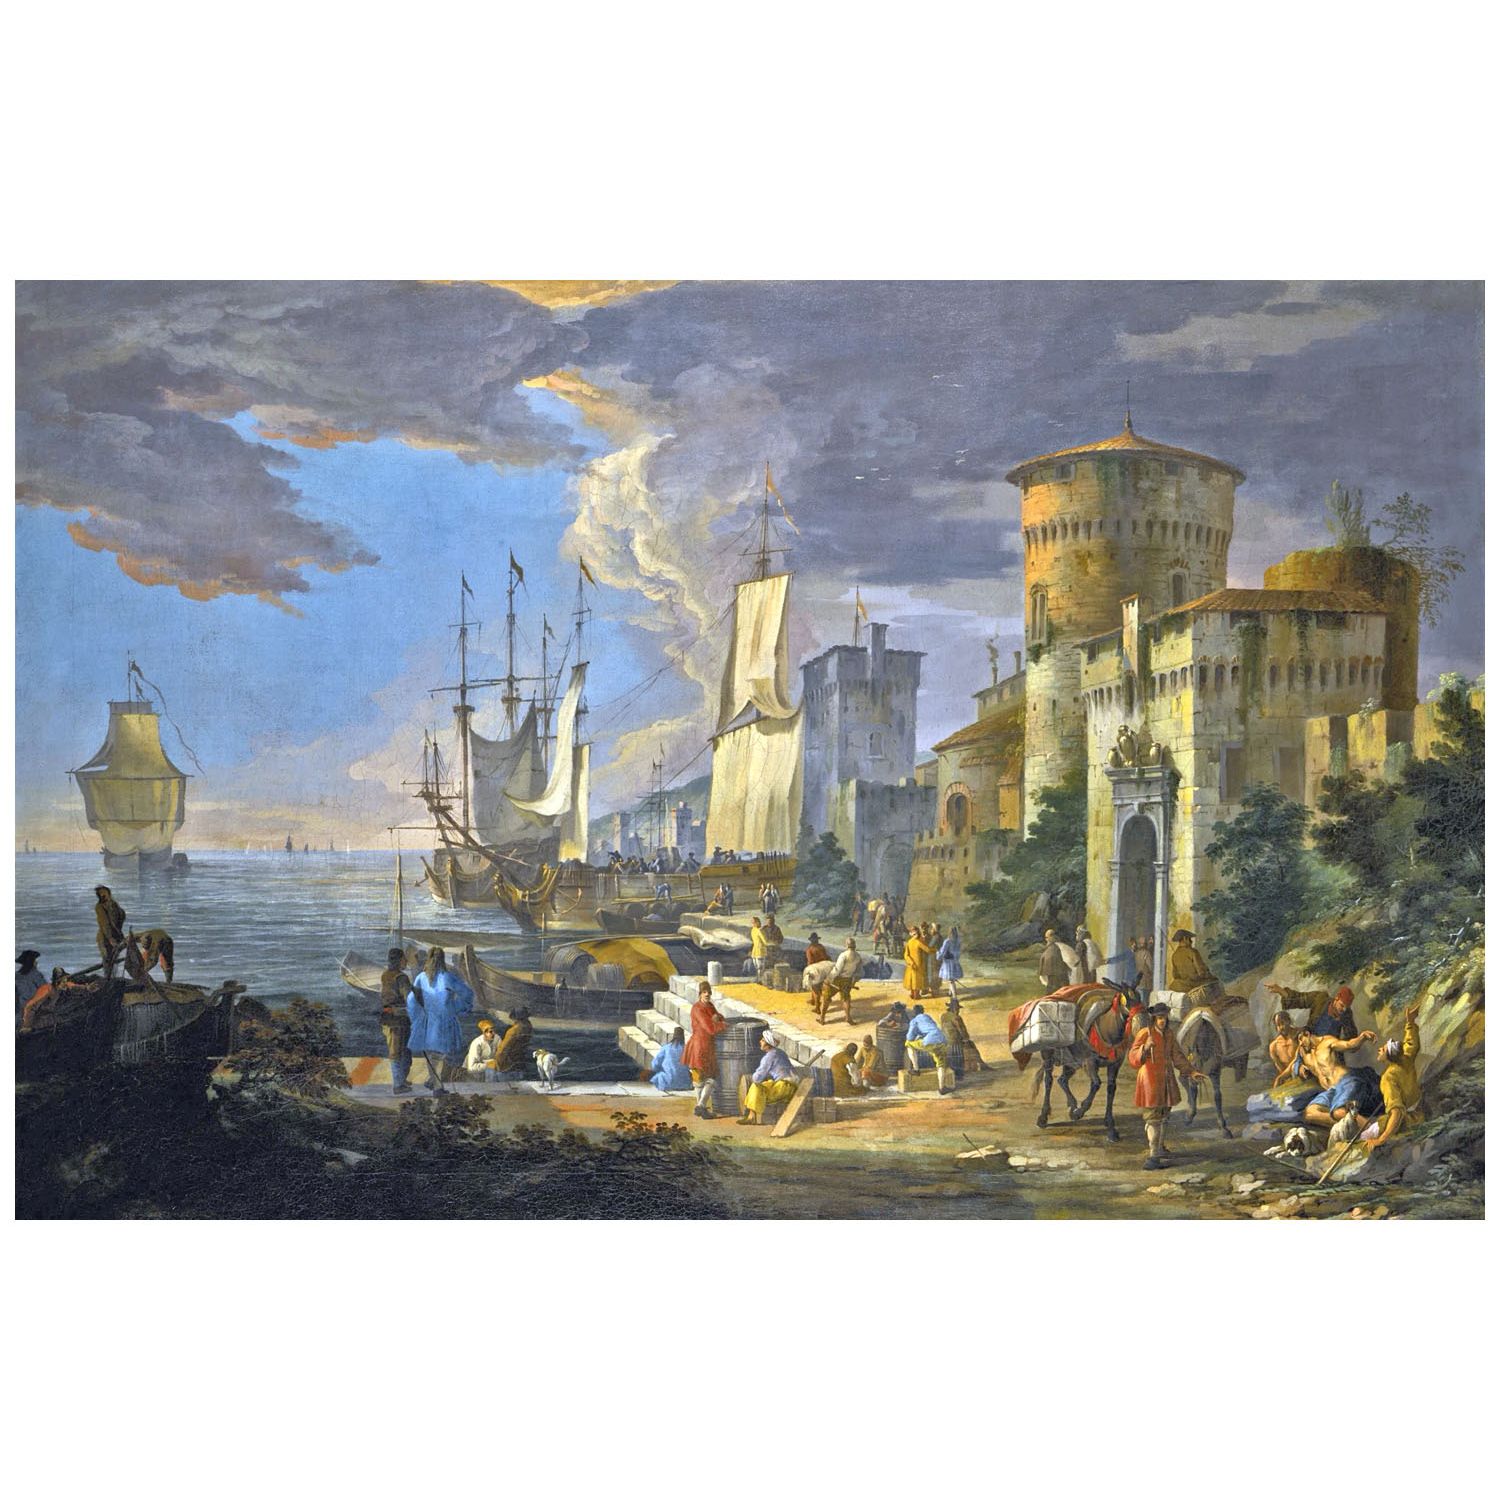 Luca Carlevarijs. Scena di porto mediterraneo. 1717. Private collection